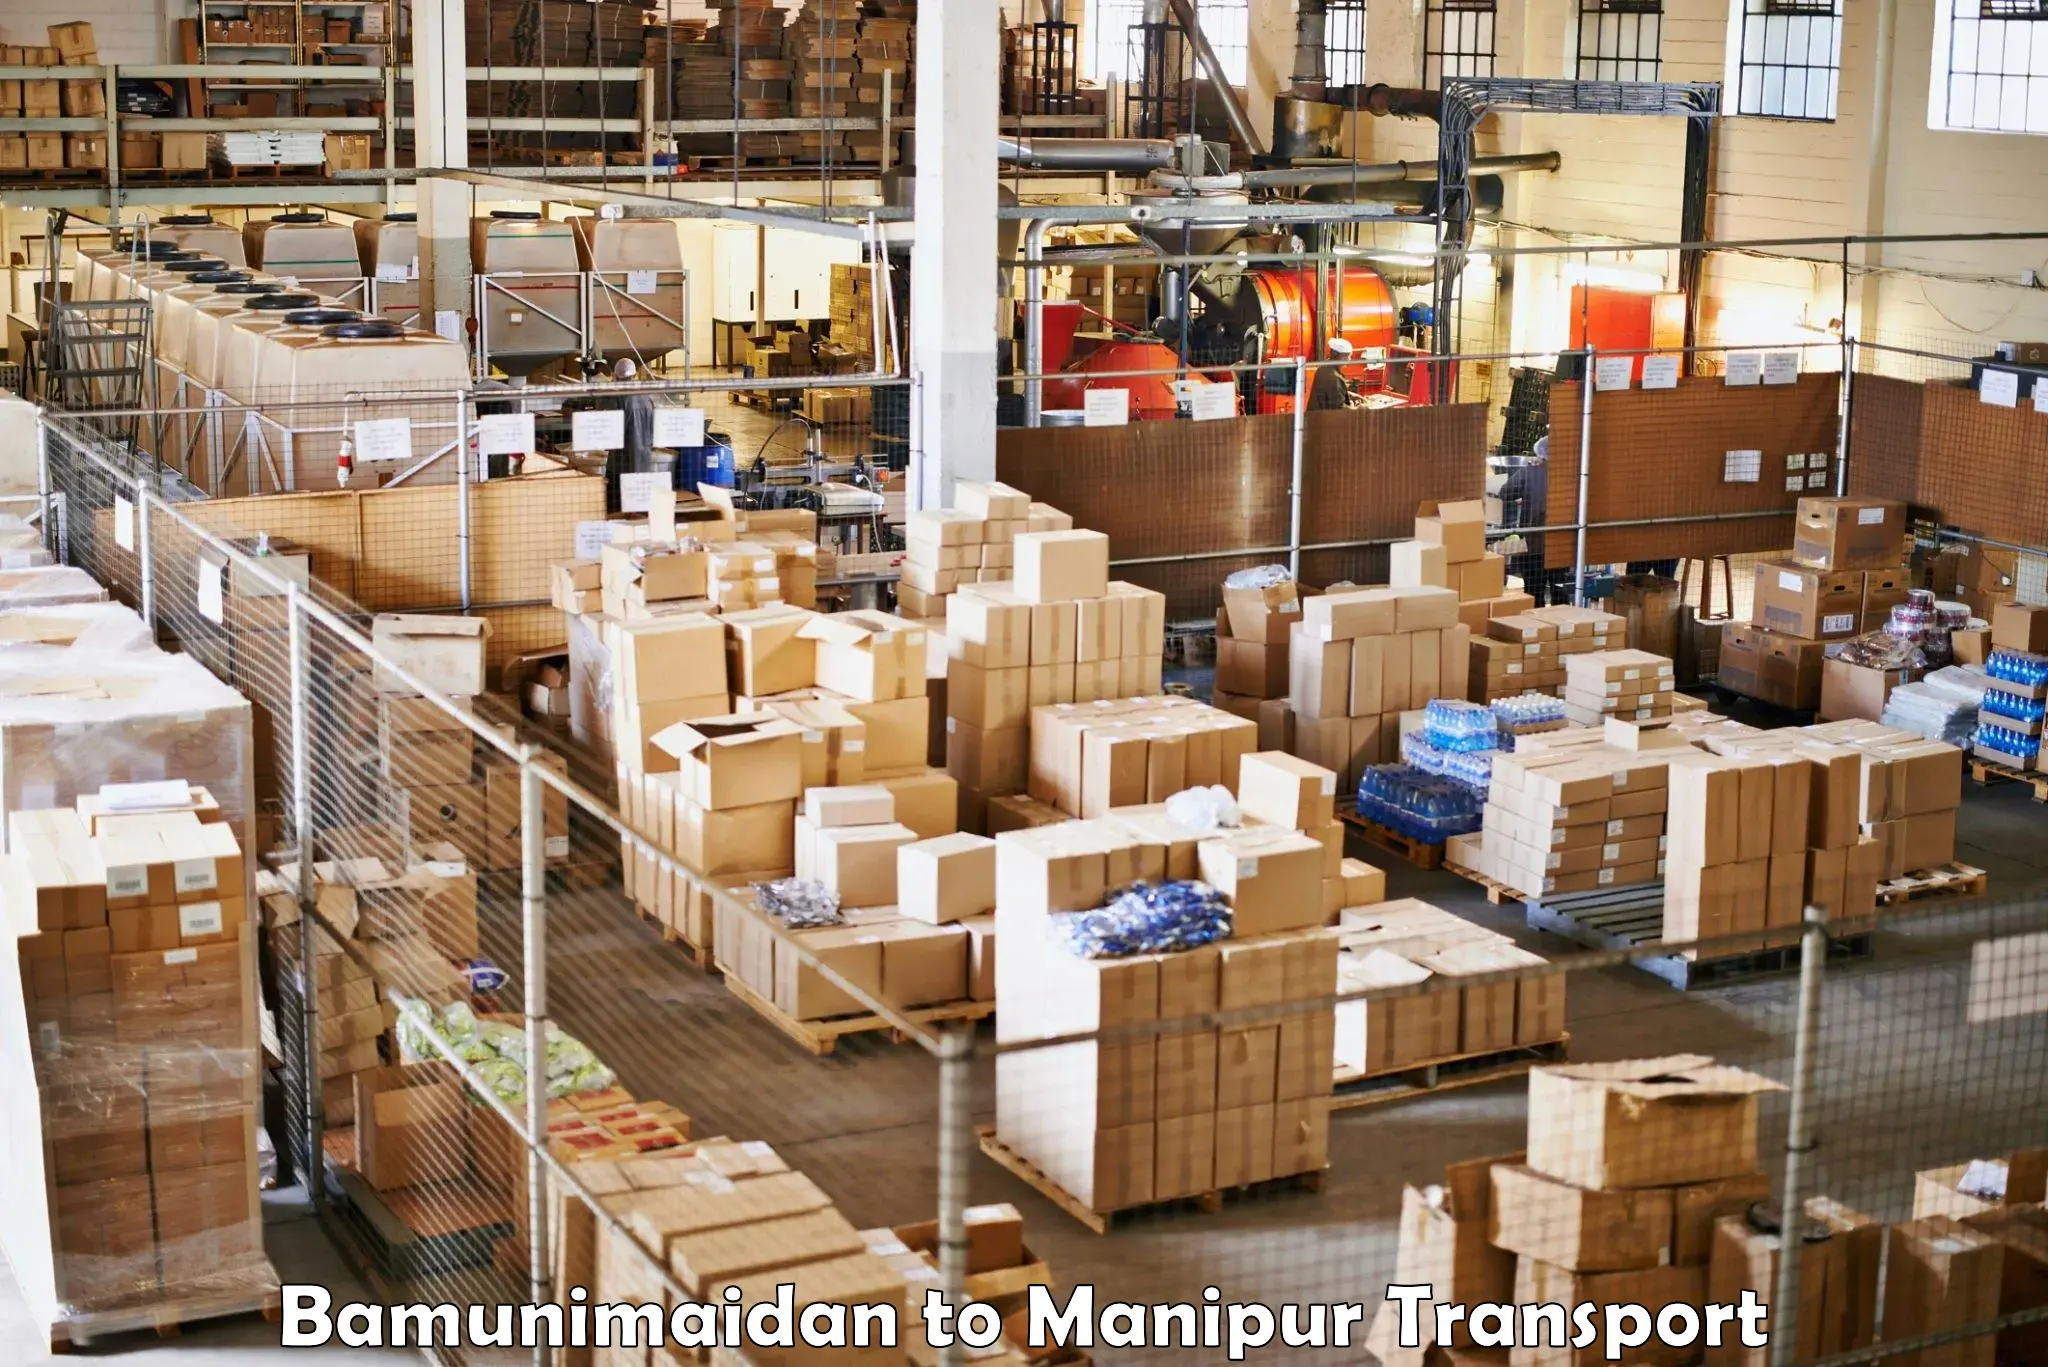 Air cargo transport services Bamunimaidan to Kaptipada